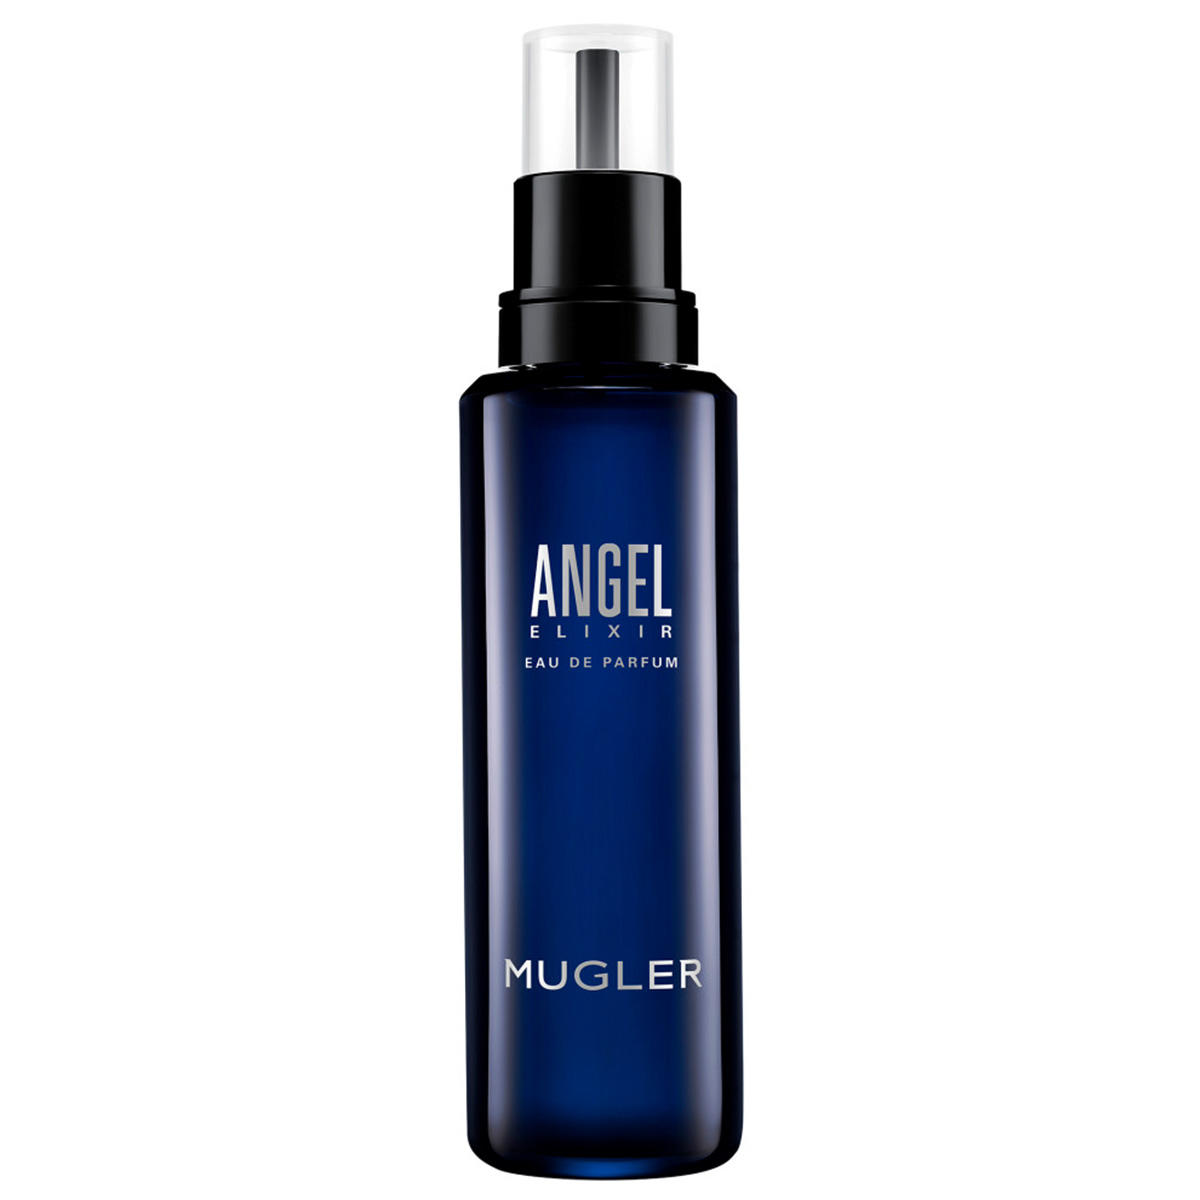 MUGLER Angel Elixir Eau de Parfum Refill Bottle 100 ml - 1